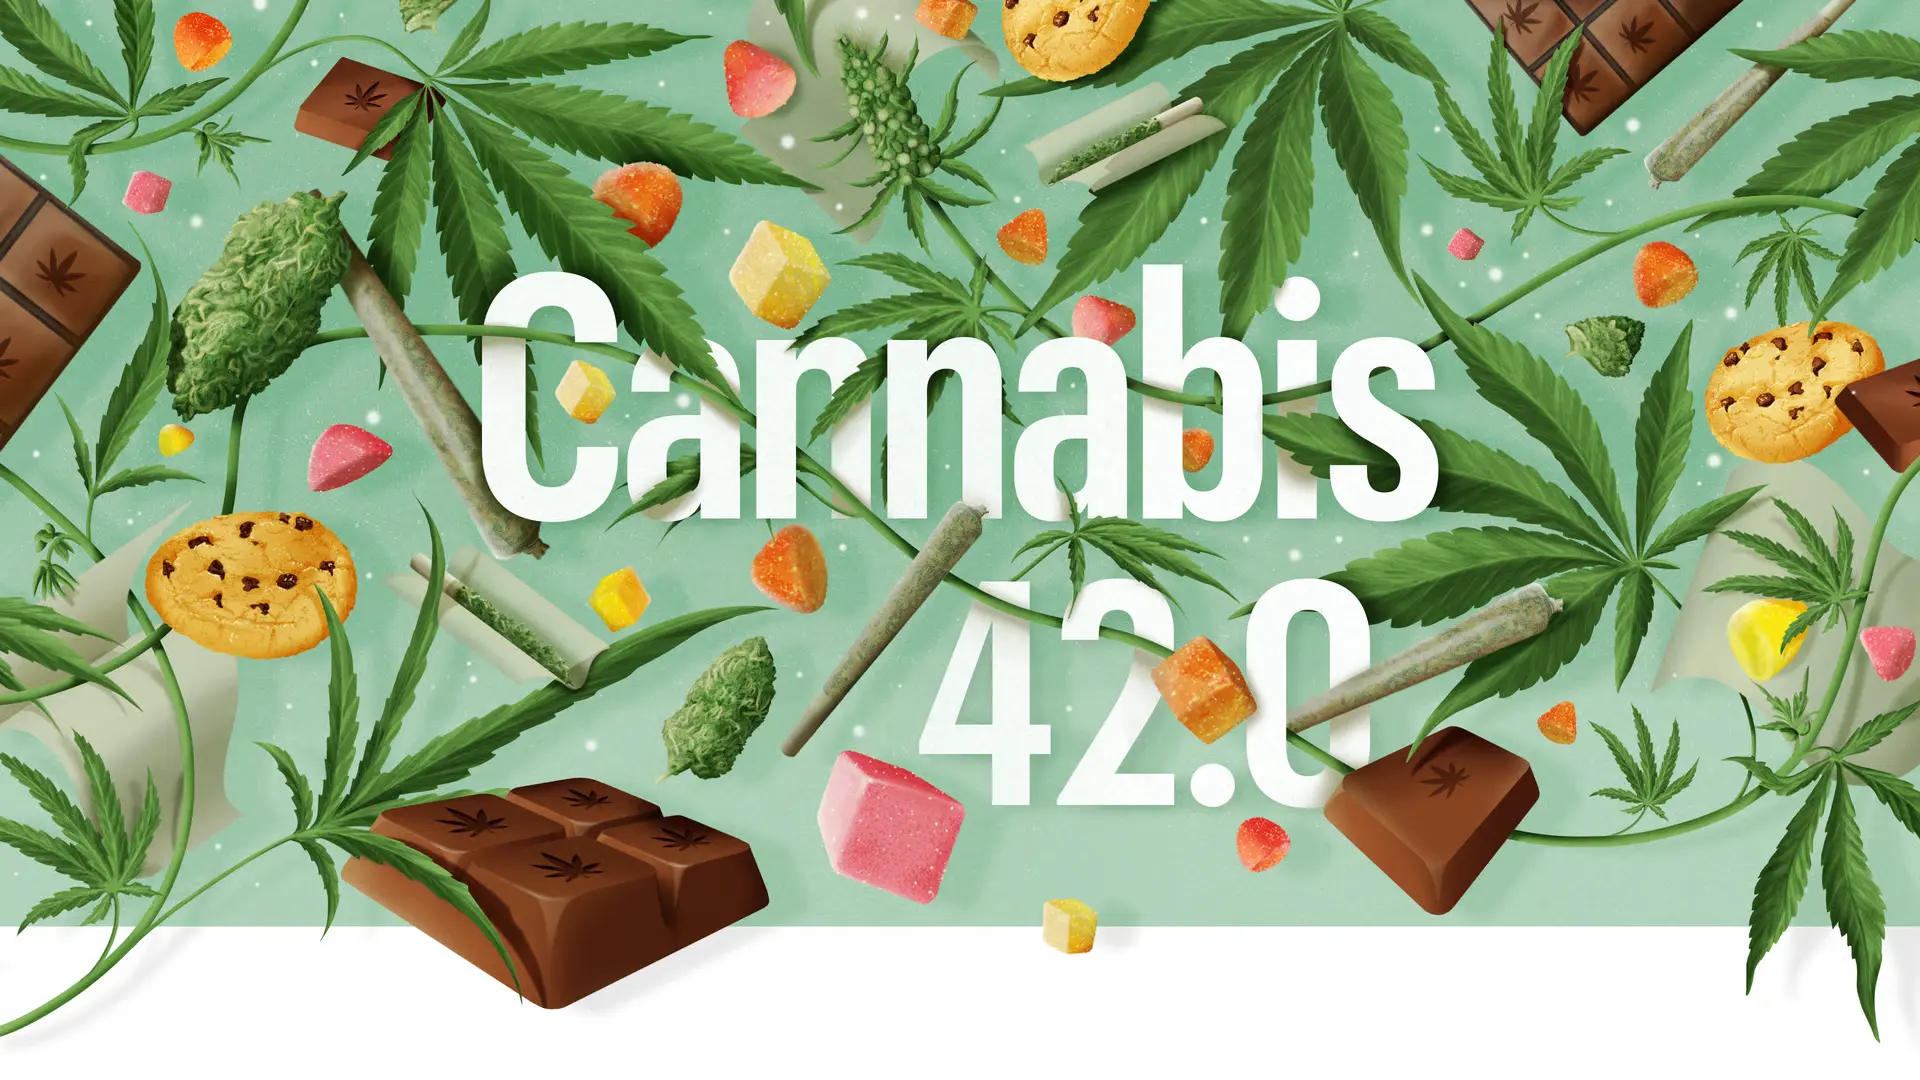 cannabis 420